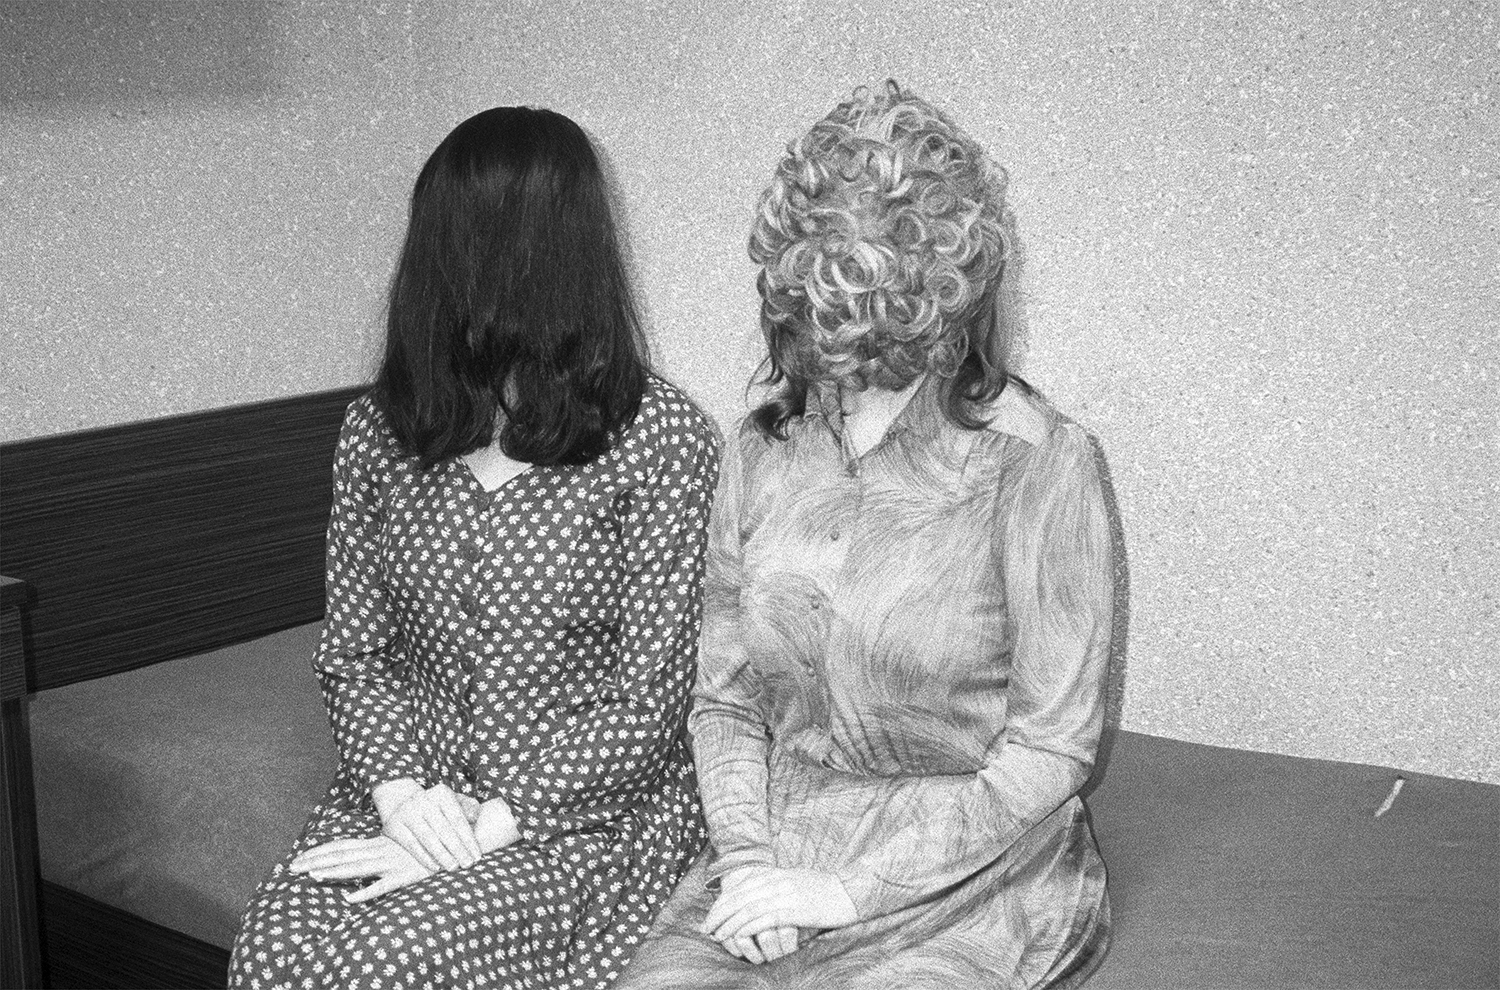 Czarno-białe zdjęcie przedstawiające dwie kobiety siedzące na wersalce. Ich włosy zasłaniają całą twarz. Dłonie mają złożone na kolanach. Pierwsza kobieta ma na sobie sukienkę w białe grochy. Druga koszulową sukienkę we wzory. Tło jest białe.